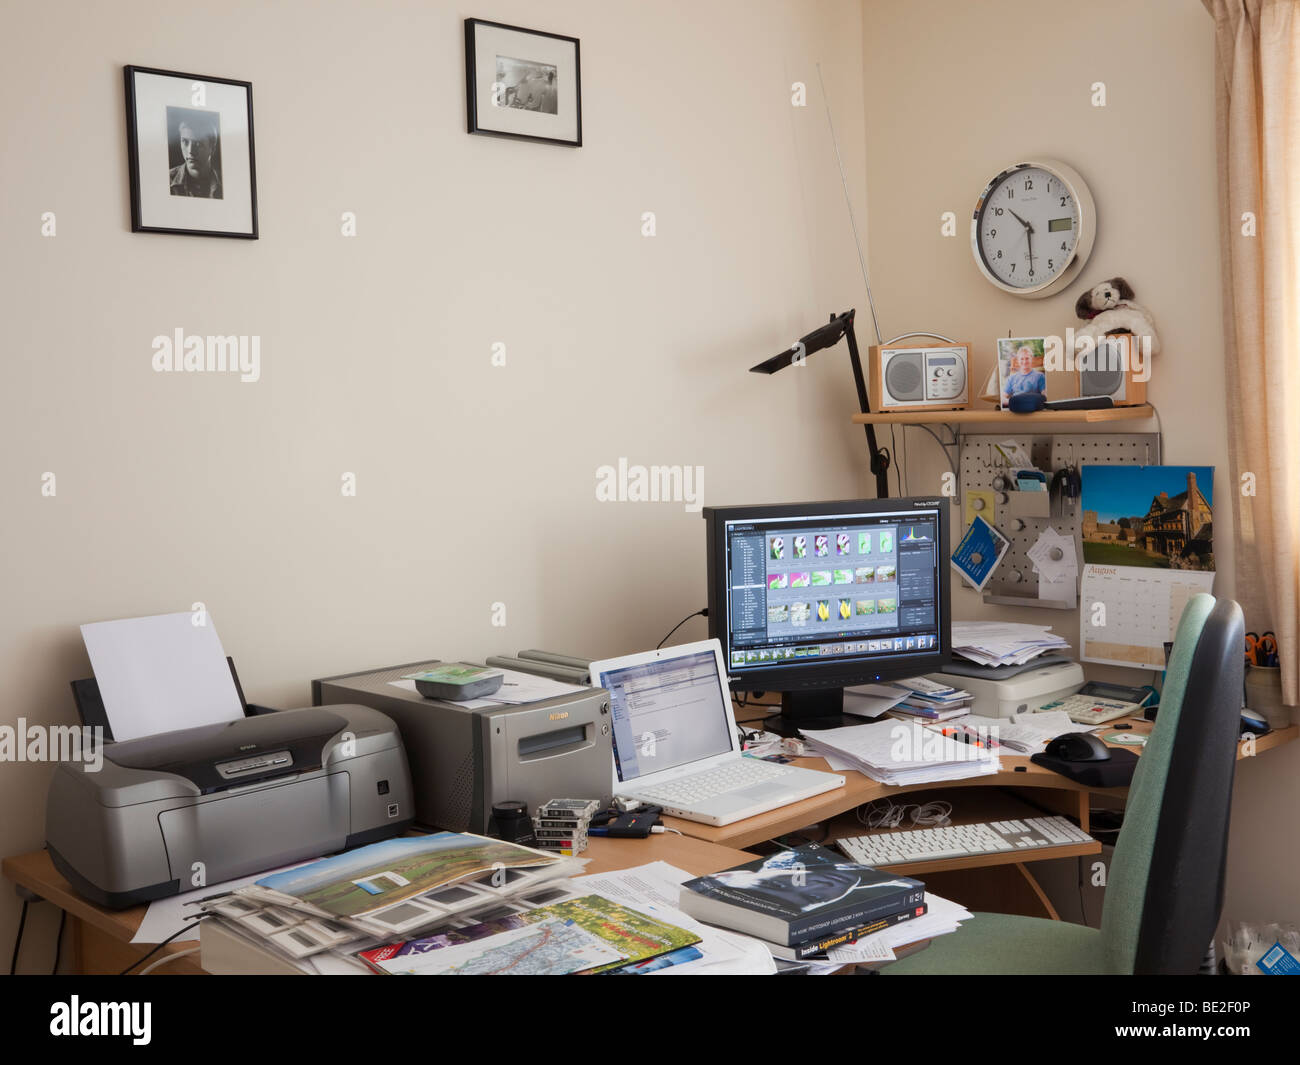 Fotografen im Büro zu Hause mit Laptop, Monitor, Lightroom, Drucker und Scanner auf einen unordentlichen Schreibtisch anzeigen. UK-Großbritannien Stockfoto